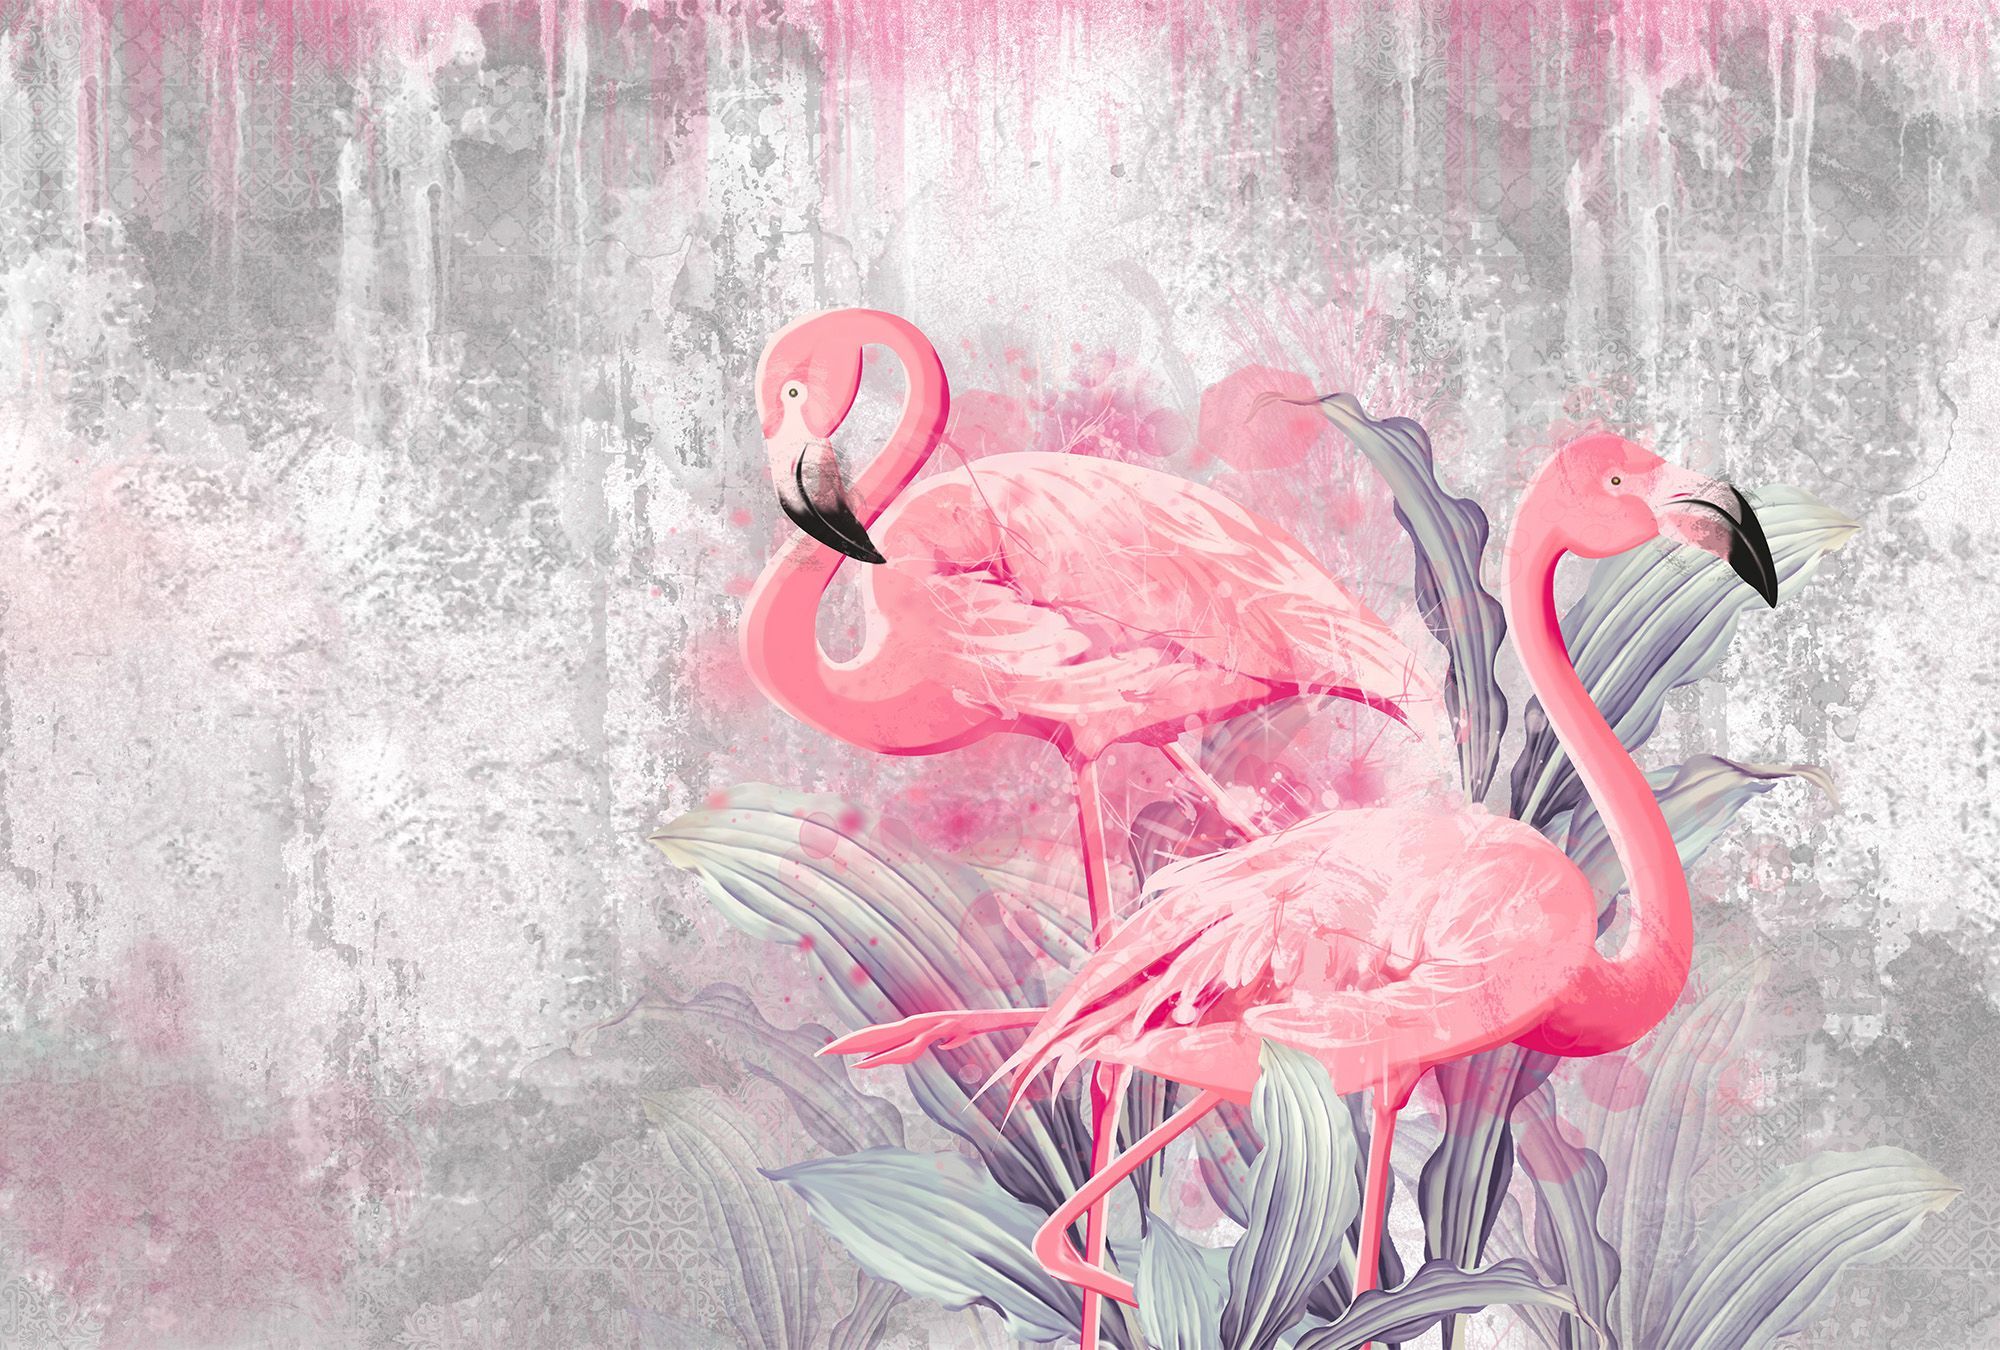 розовый фламинго в интерьере